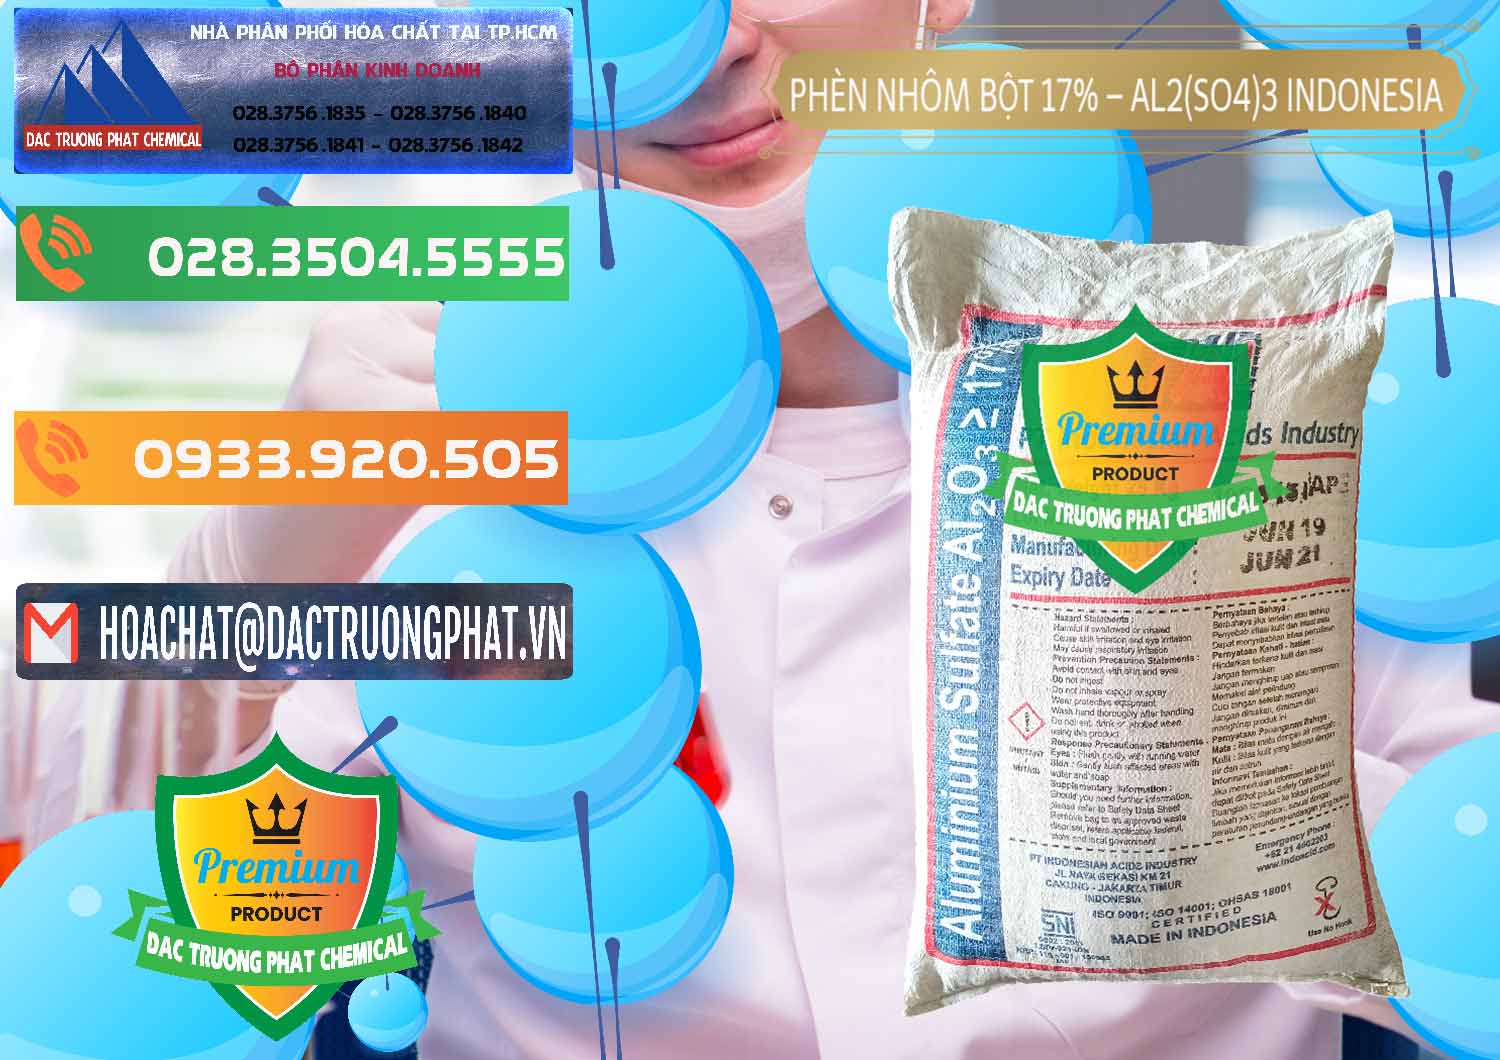 Nhập khẩu ( bán ) Phèn Nhôm Bột - Al2(SO4)3 17% bao 25kg Indonesia - 0114 - Nơi bán - cung cấp hóa chất tại TP.HCM - hoachatxulynuoc.com.vn